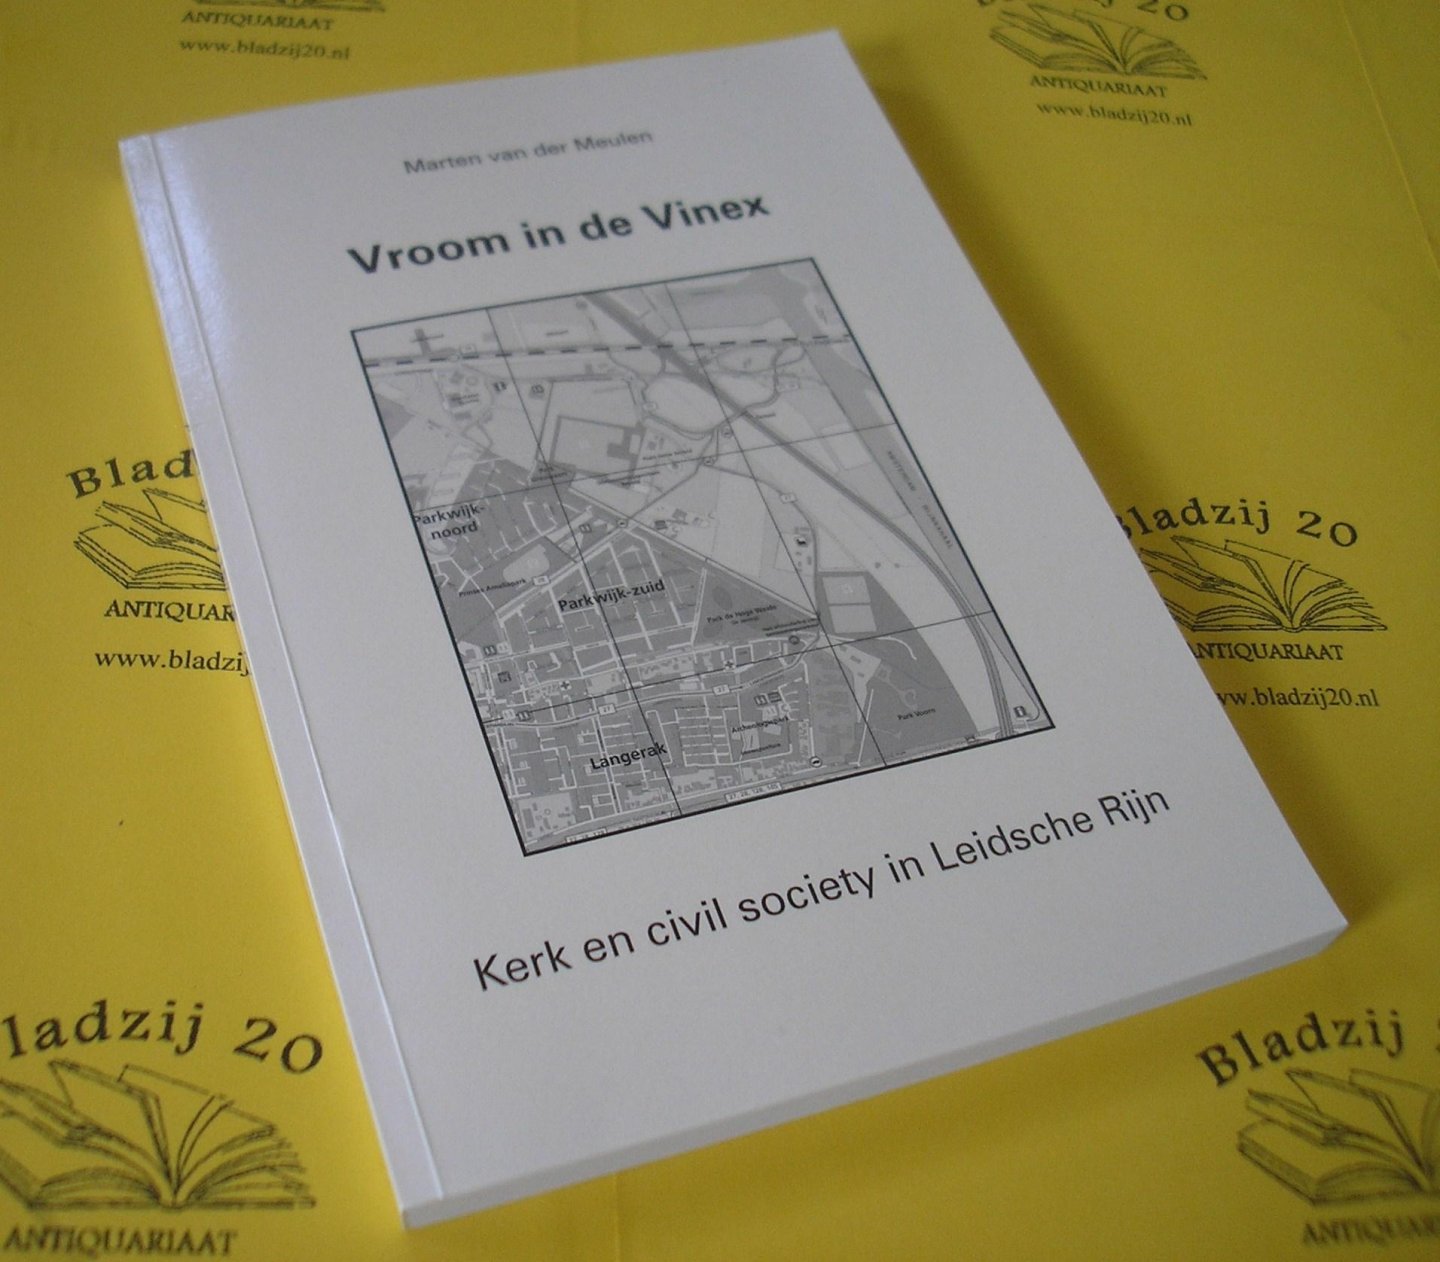 Meulen, Marten, van der. - Vroom in de Vinex. Kerk en civil society in Leidsche Rijn.